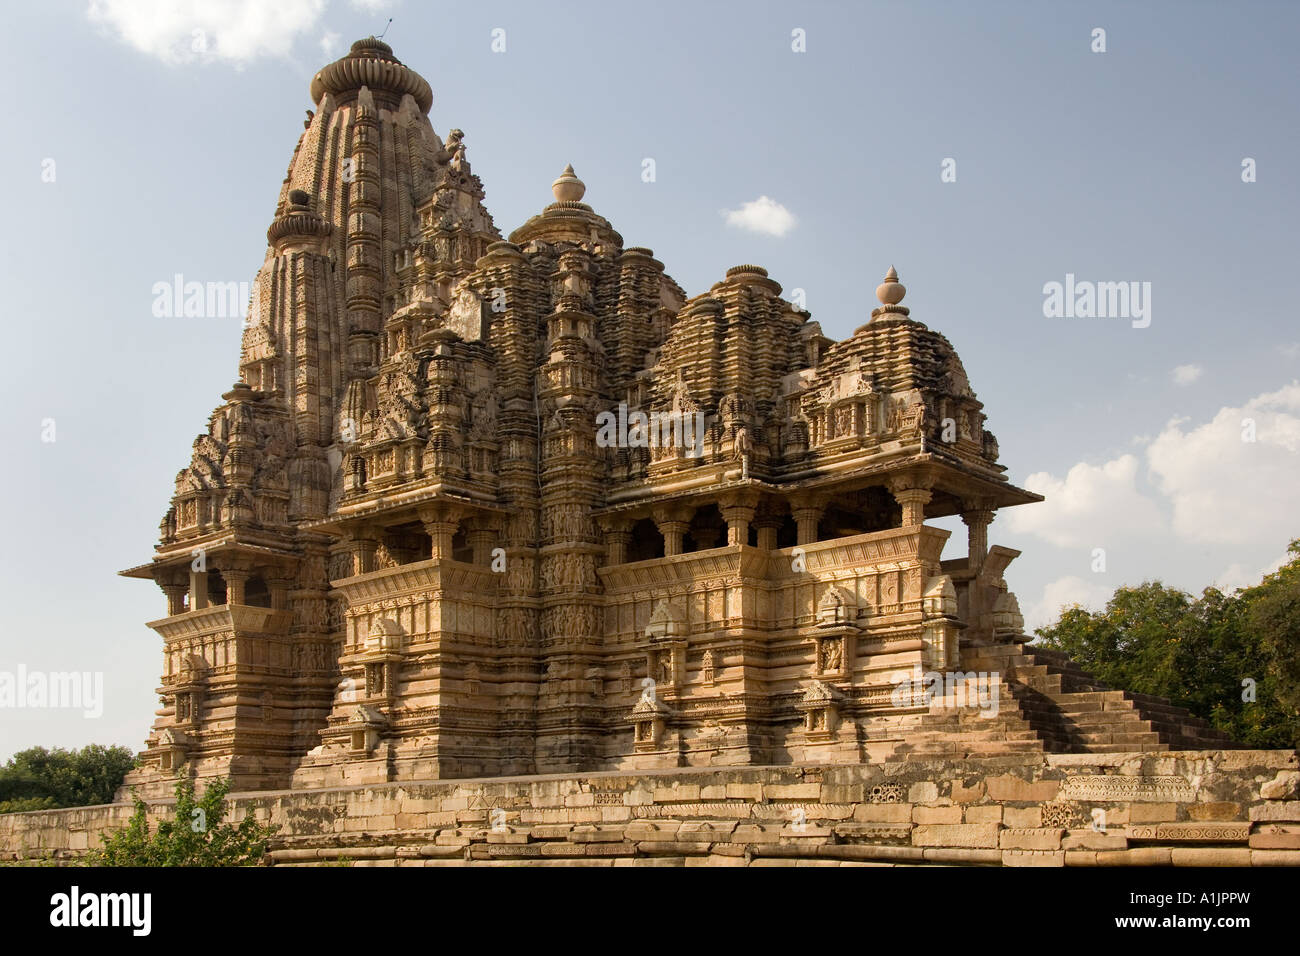 Le Kandariya Mahadev Temple complexe à Khajuraho Madhya Pradesh dans la région du centre de l'Inde. Site du patrimoine mondial de l'UNESCO. Banque D'Images